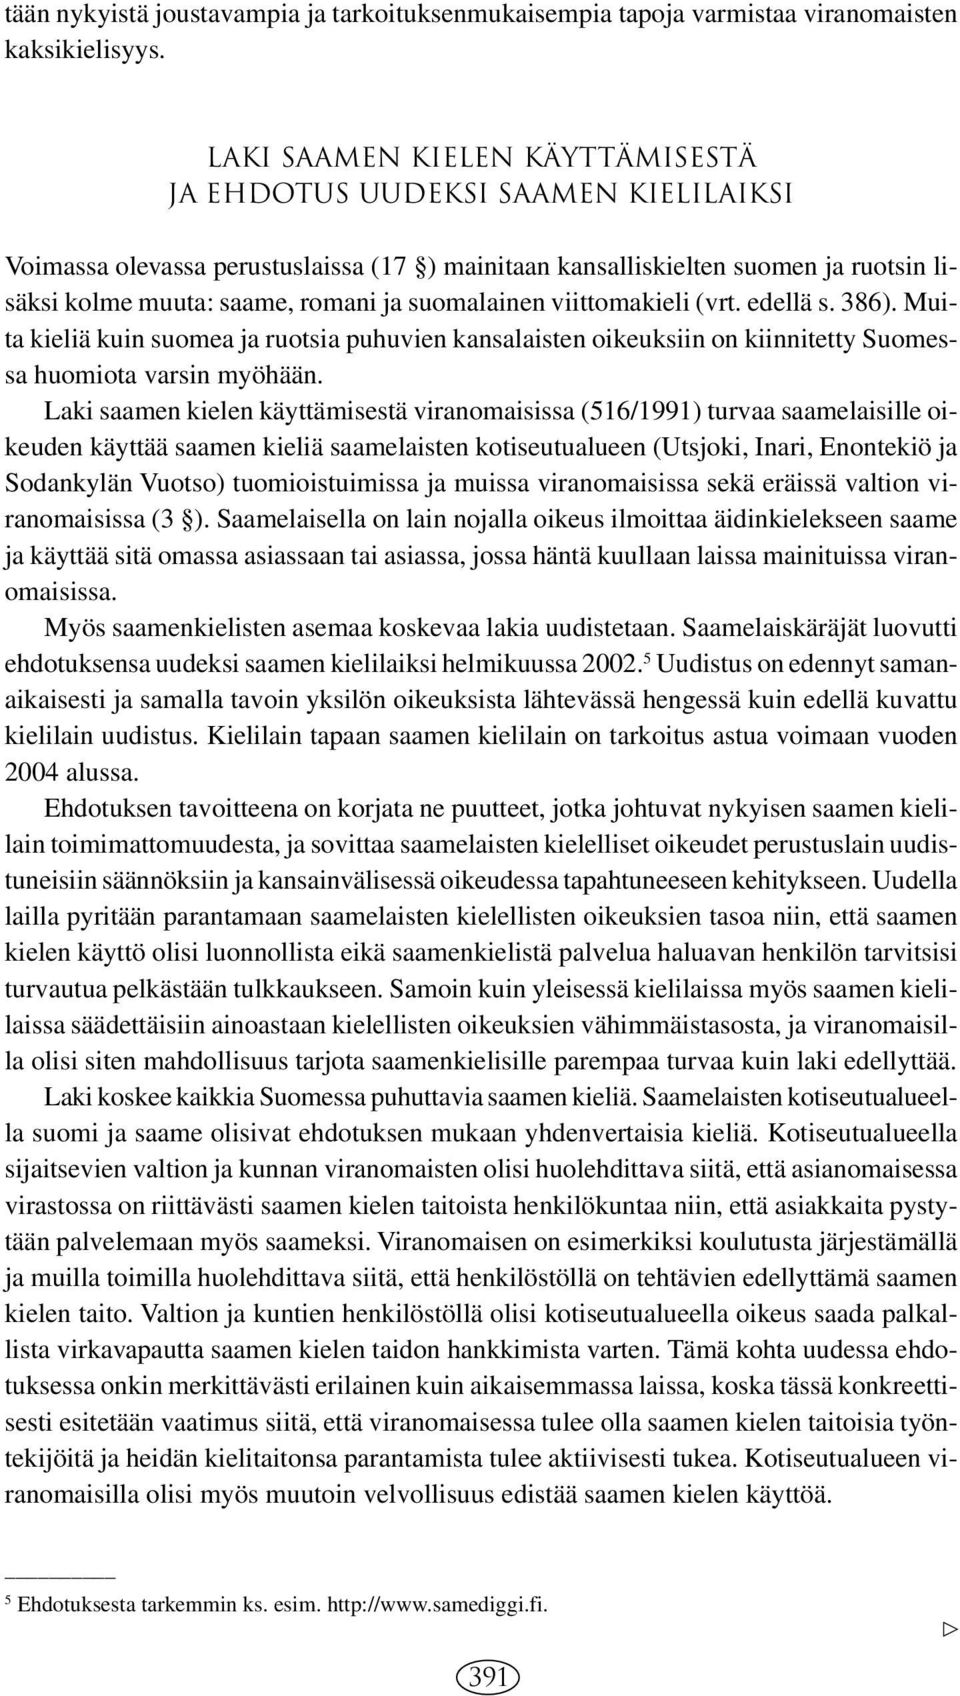 suomalainen viittomakieli (vrt. edellä s. 386). Muita kieliä kuin suomea ja ruotsia puhuvien kansalaisten oikeuksiin on kiinnitetty Suomessa huomiota varsin myöhään.